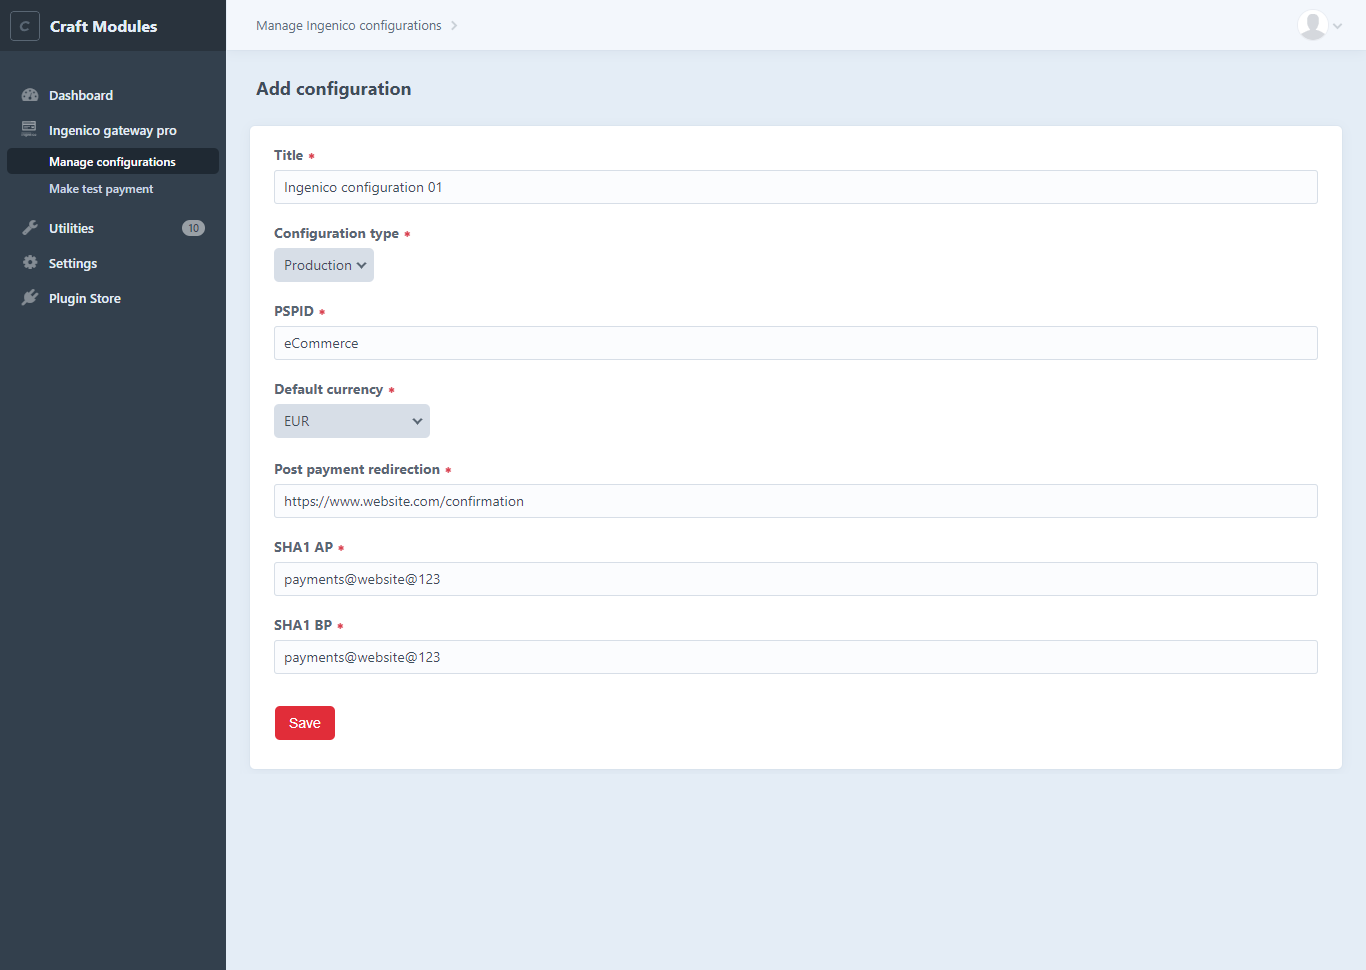 Screenshot 2 - Add new configuration.png